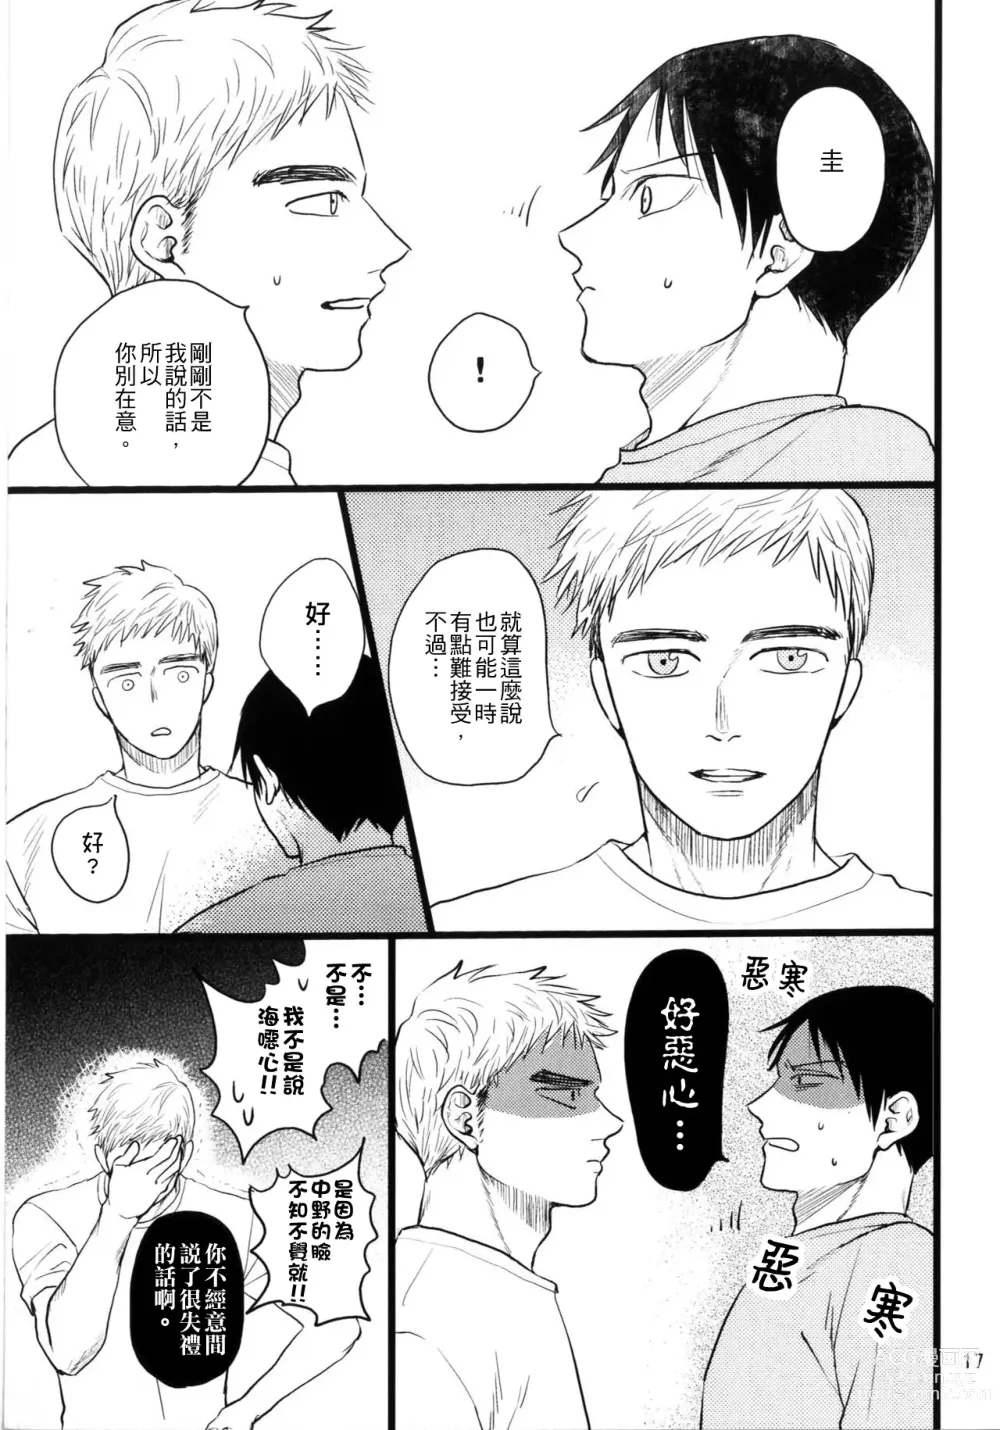 Page 15 of doujinshi Umi ga Nakano de Nakano ga Umi de